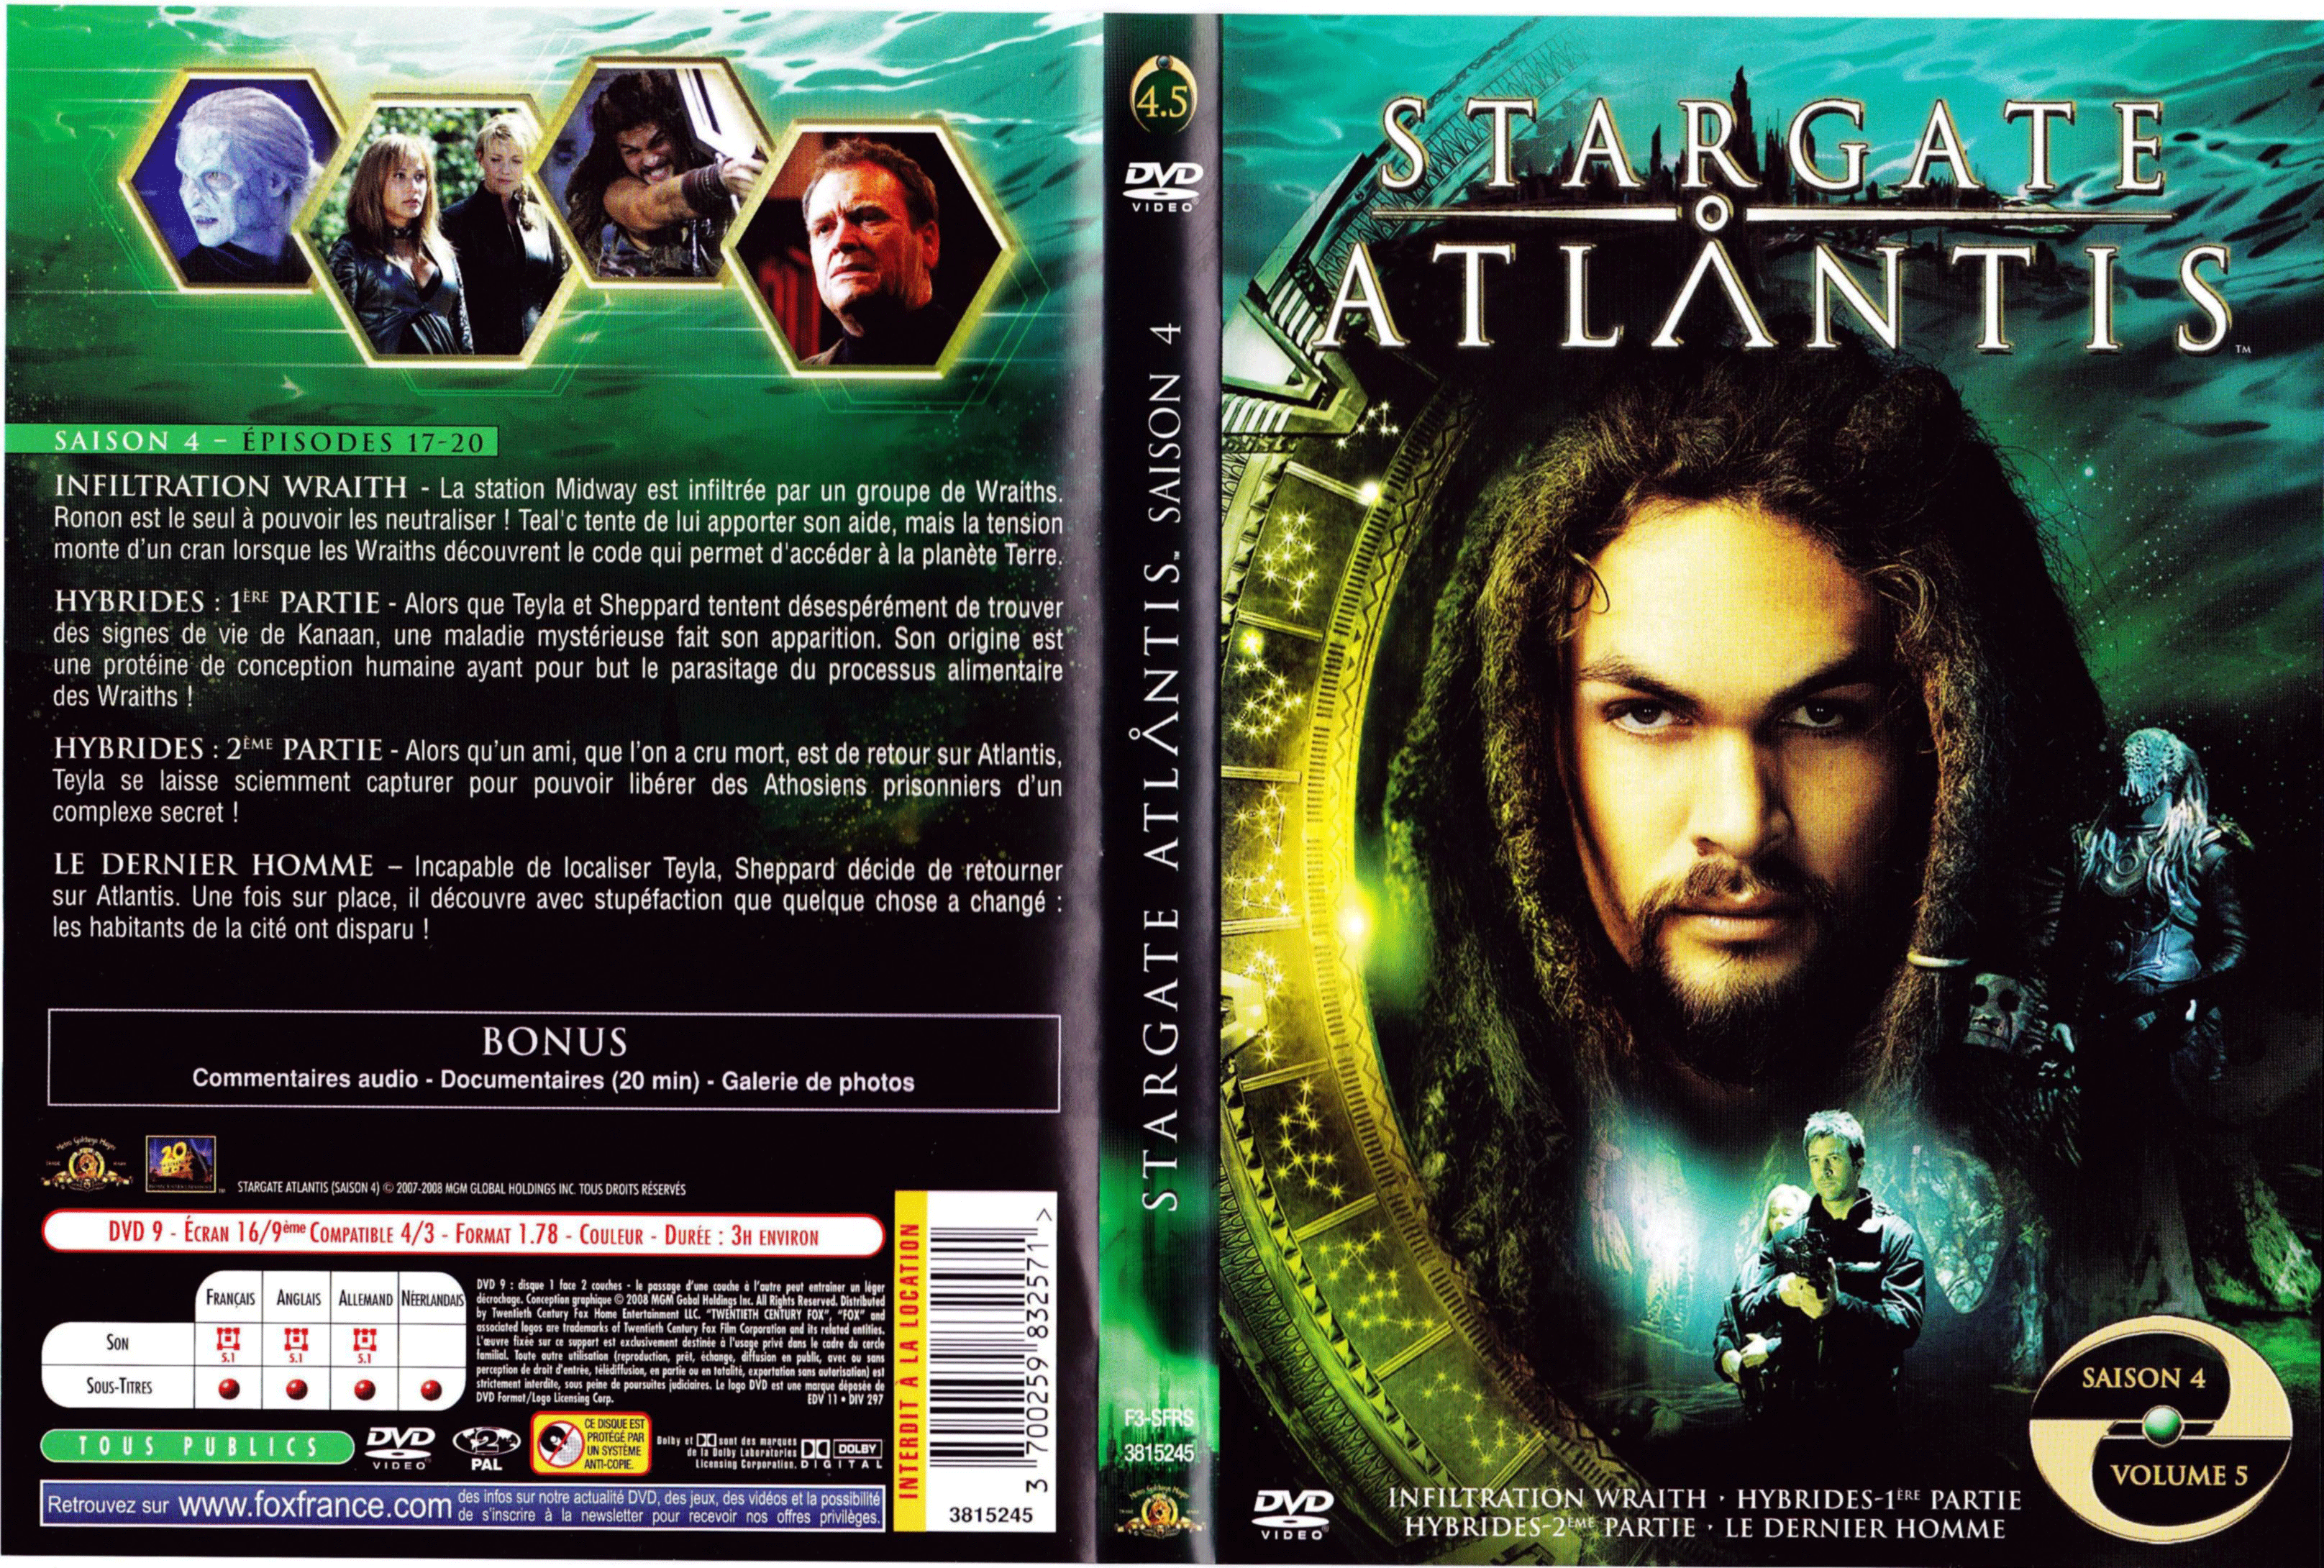 Jaquette DVD Stargate Atlantis Saison 4 vol 5